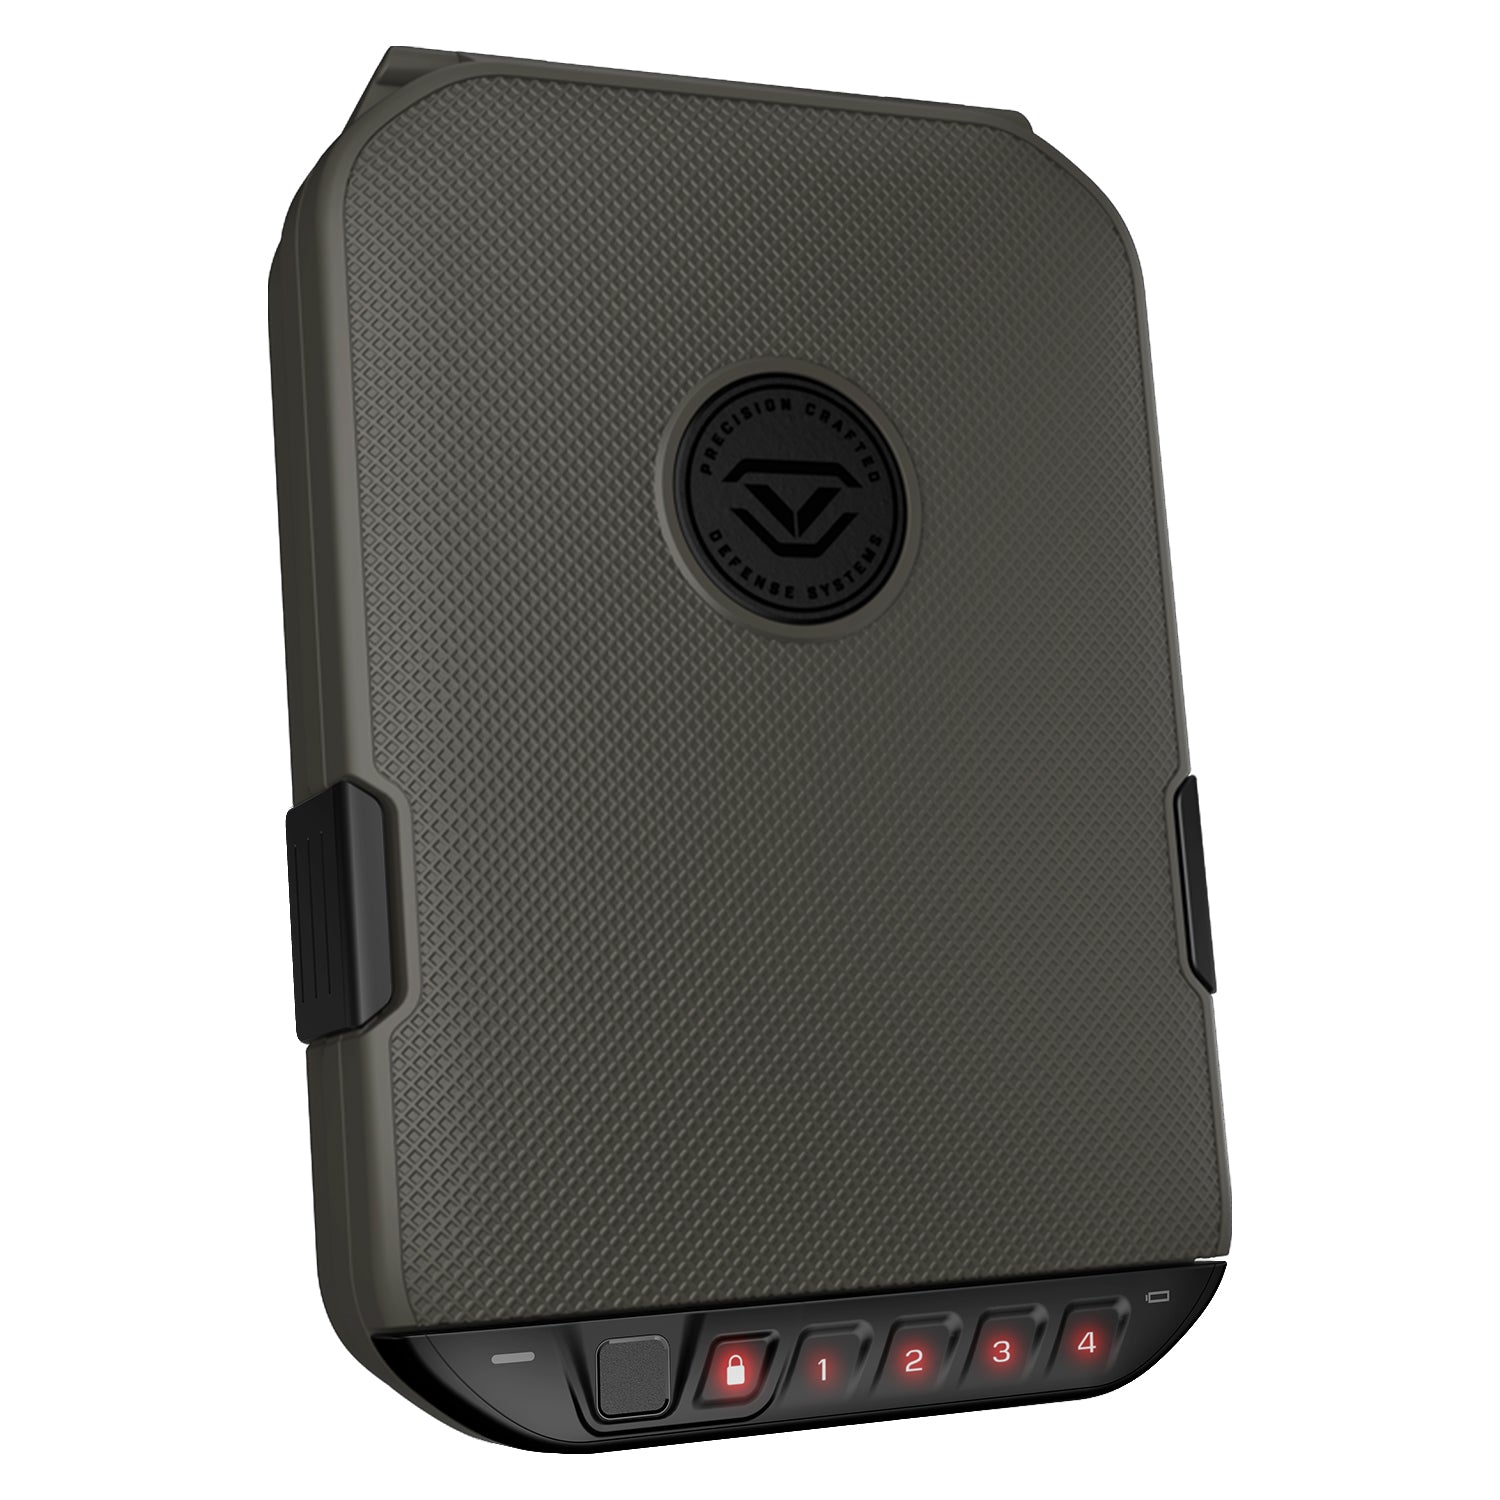 Vaultek - biometric lifepod 2.0 full-size - olive drab - MODLOCK